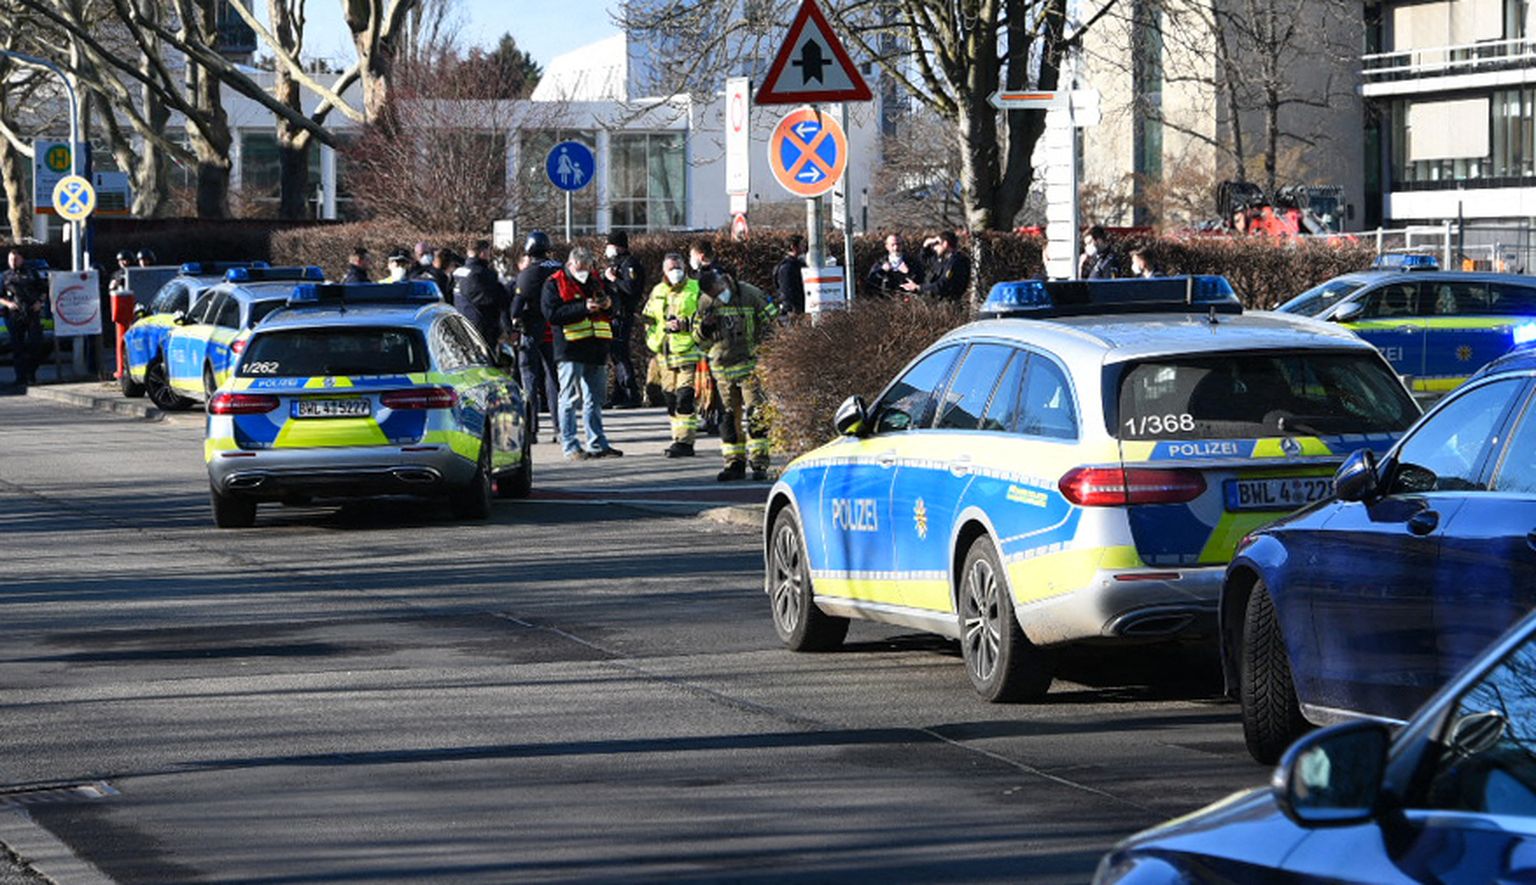 Saksamaa Heidelbergi ülikoolis avas relvastatud isik tule. Pildil on politsei sündmuskohal